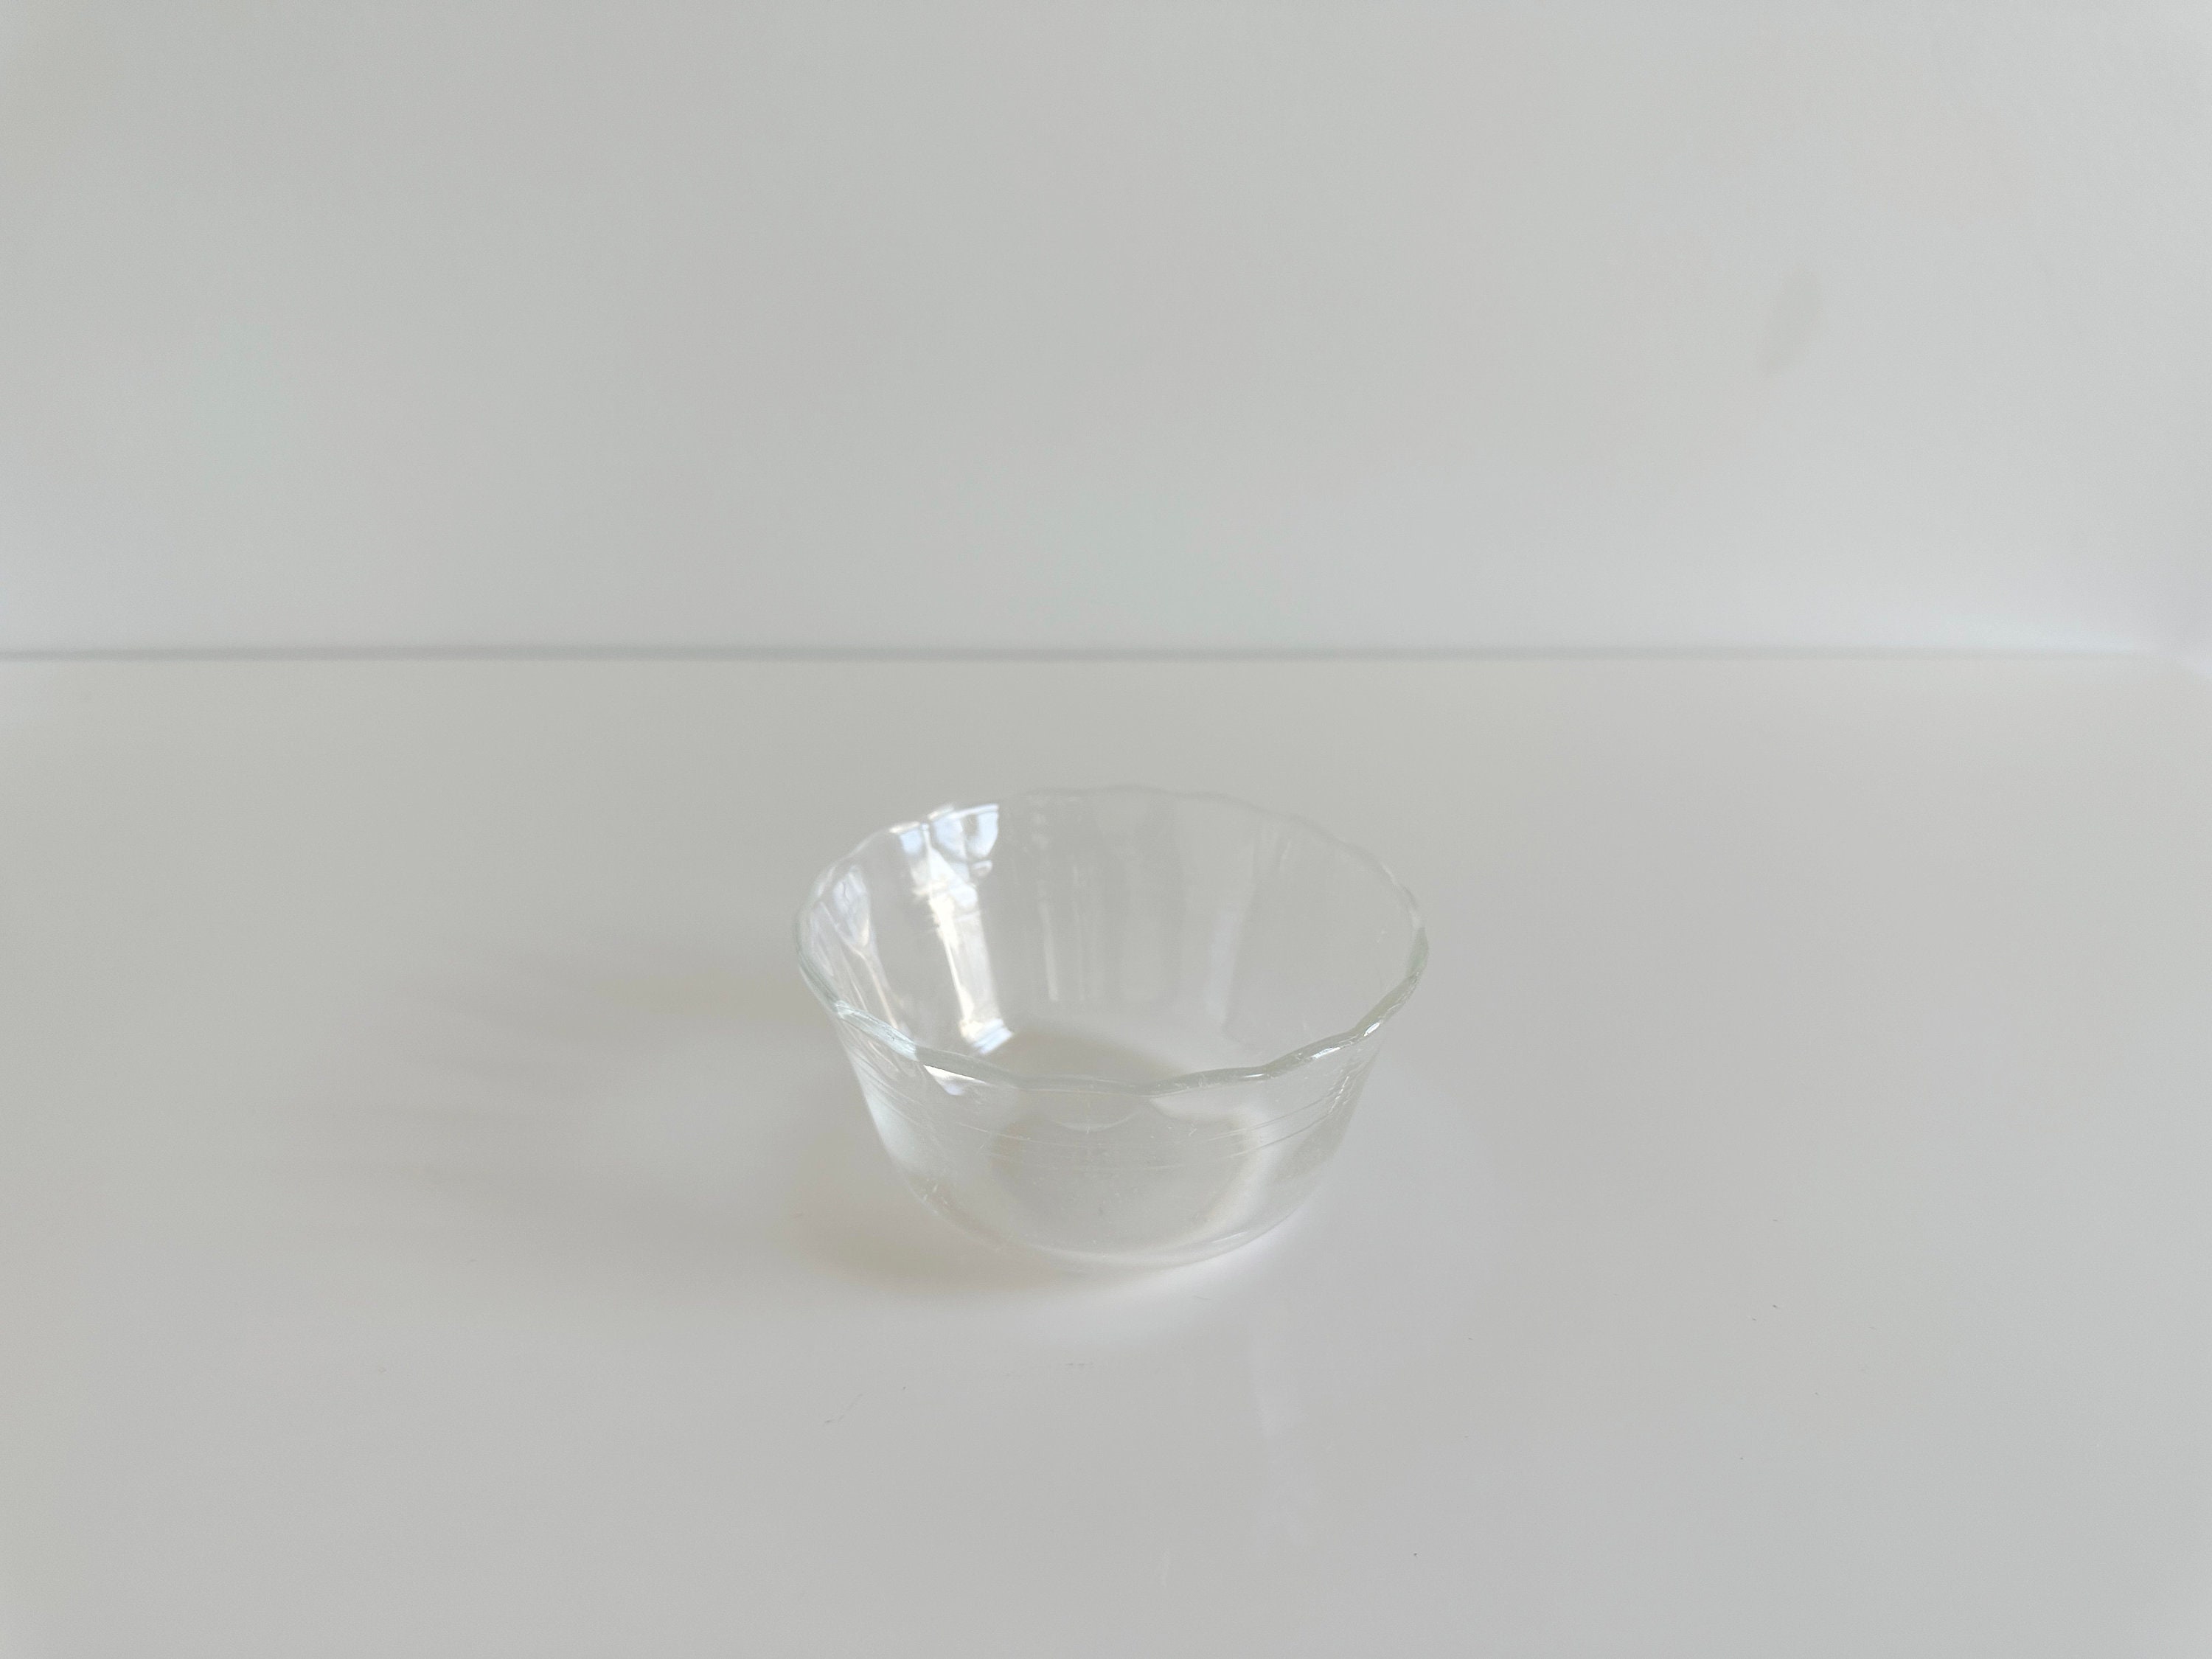 ❤️ NEW 4 PYREX 6-oz Glass CUSTARD CUPS Bake Prep Dessert Clear